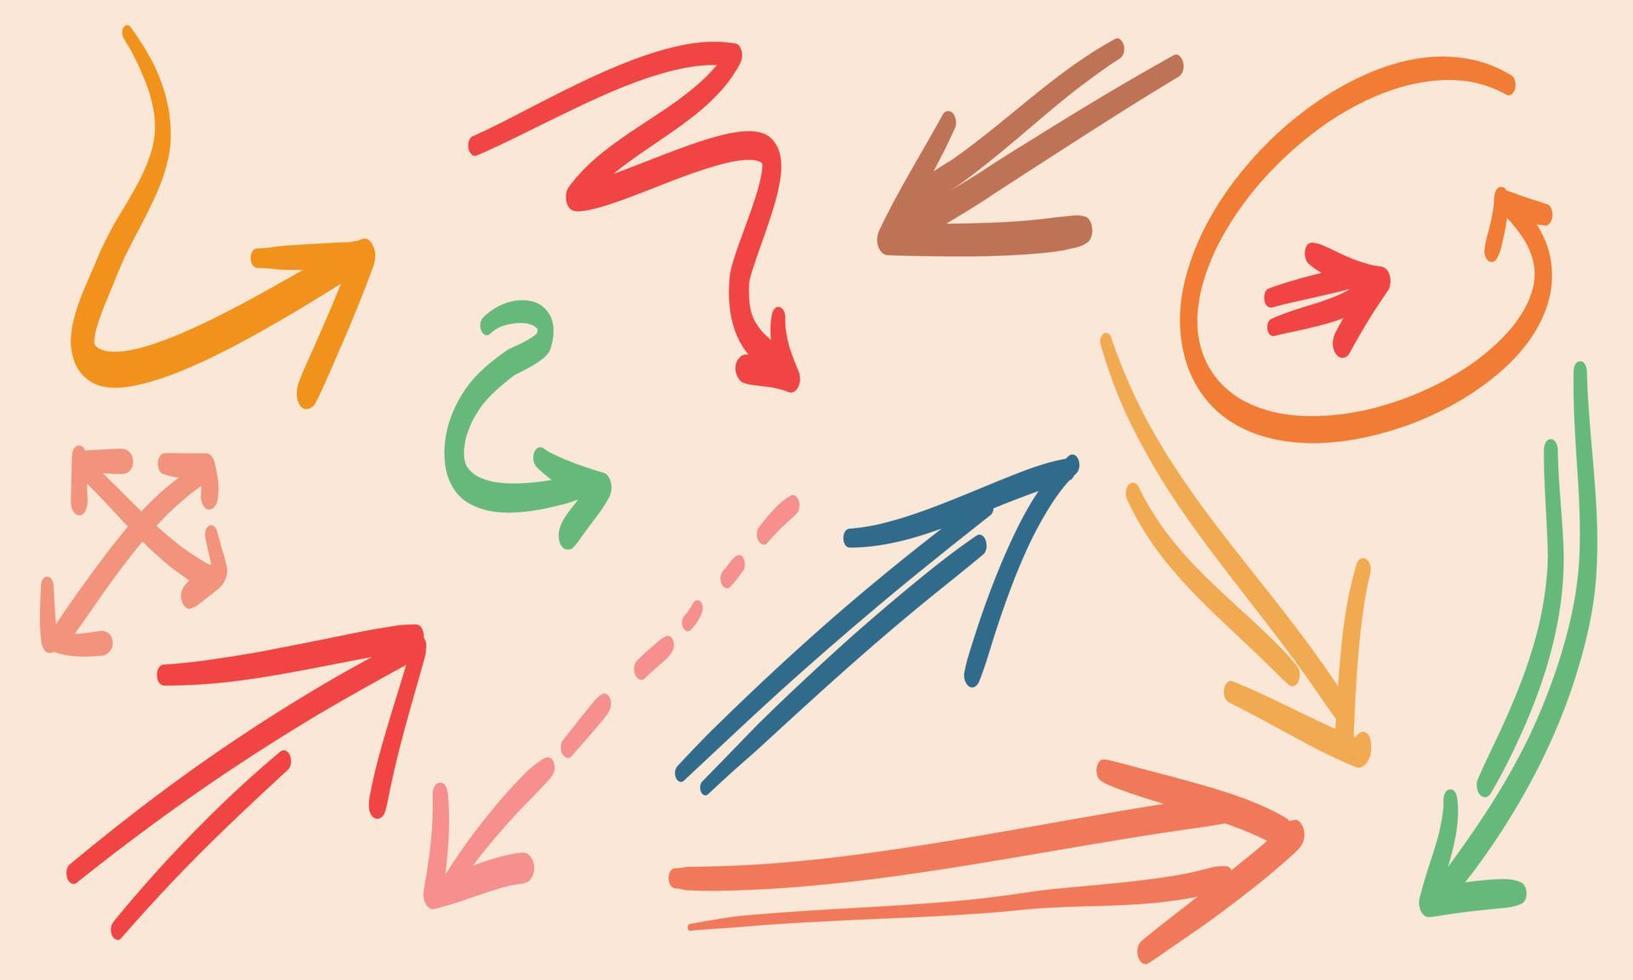 várias setas de doodle coloridas com formas e objetos de ponteiros de direção. ilustração vetorial desenhada à mão vetor